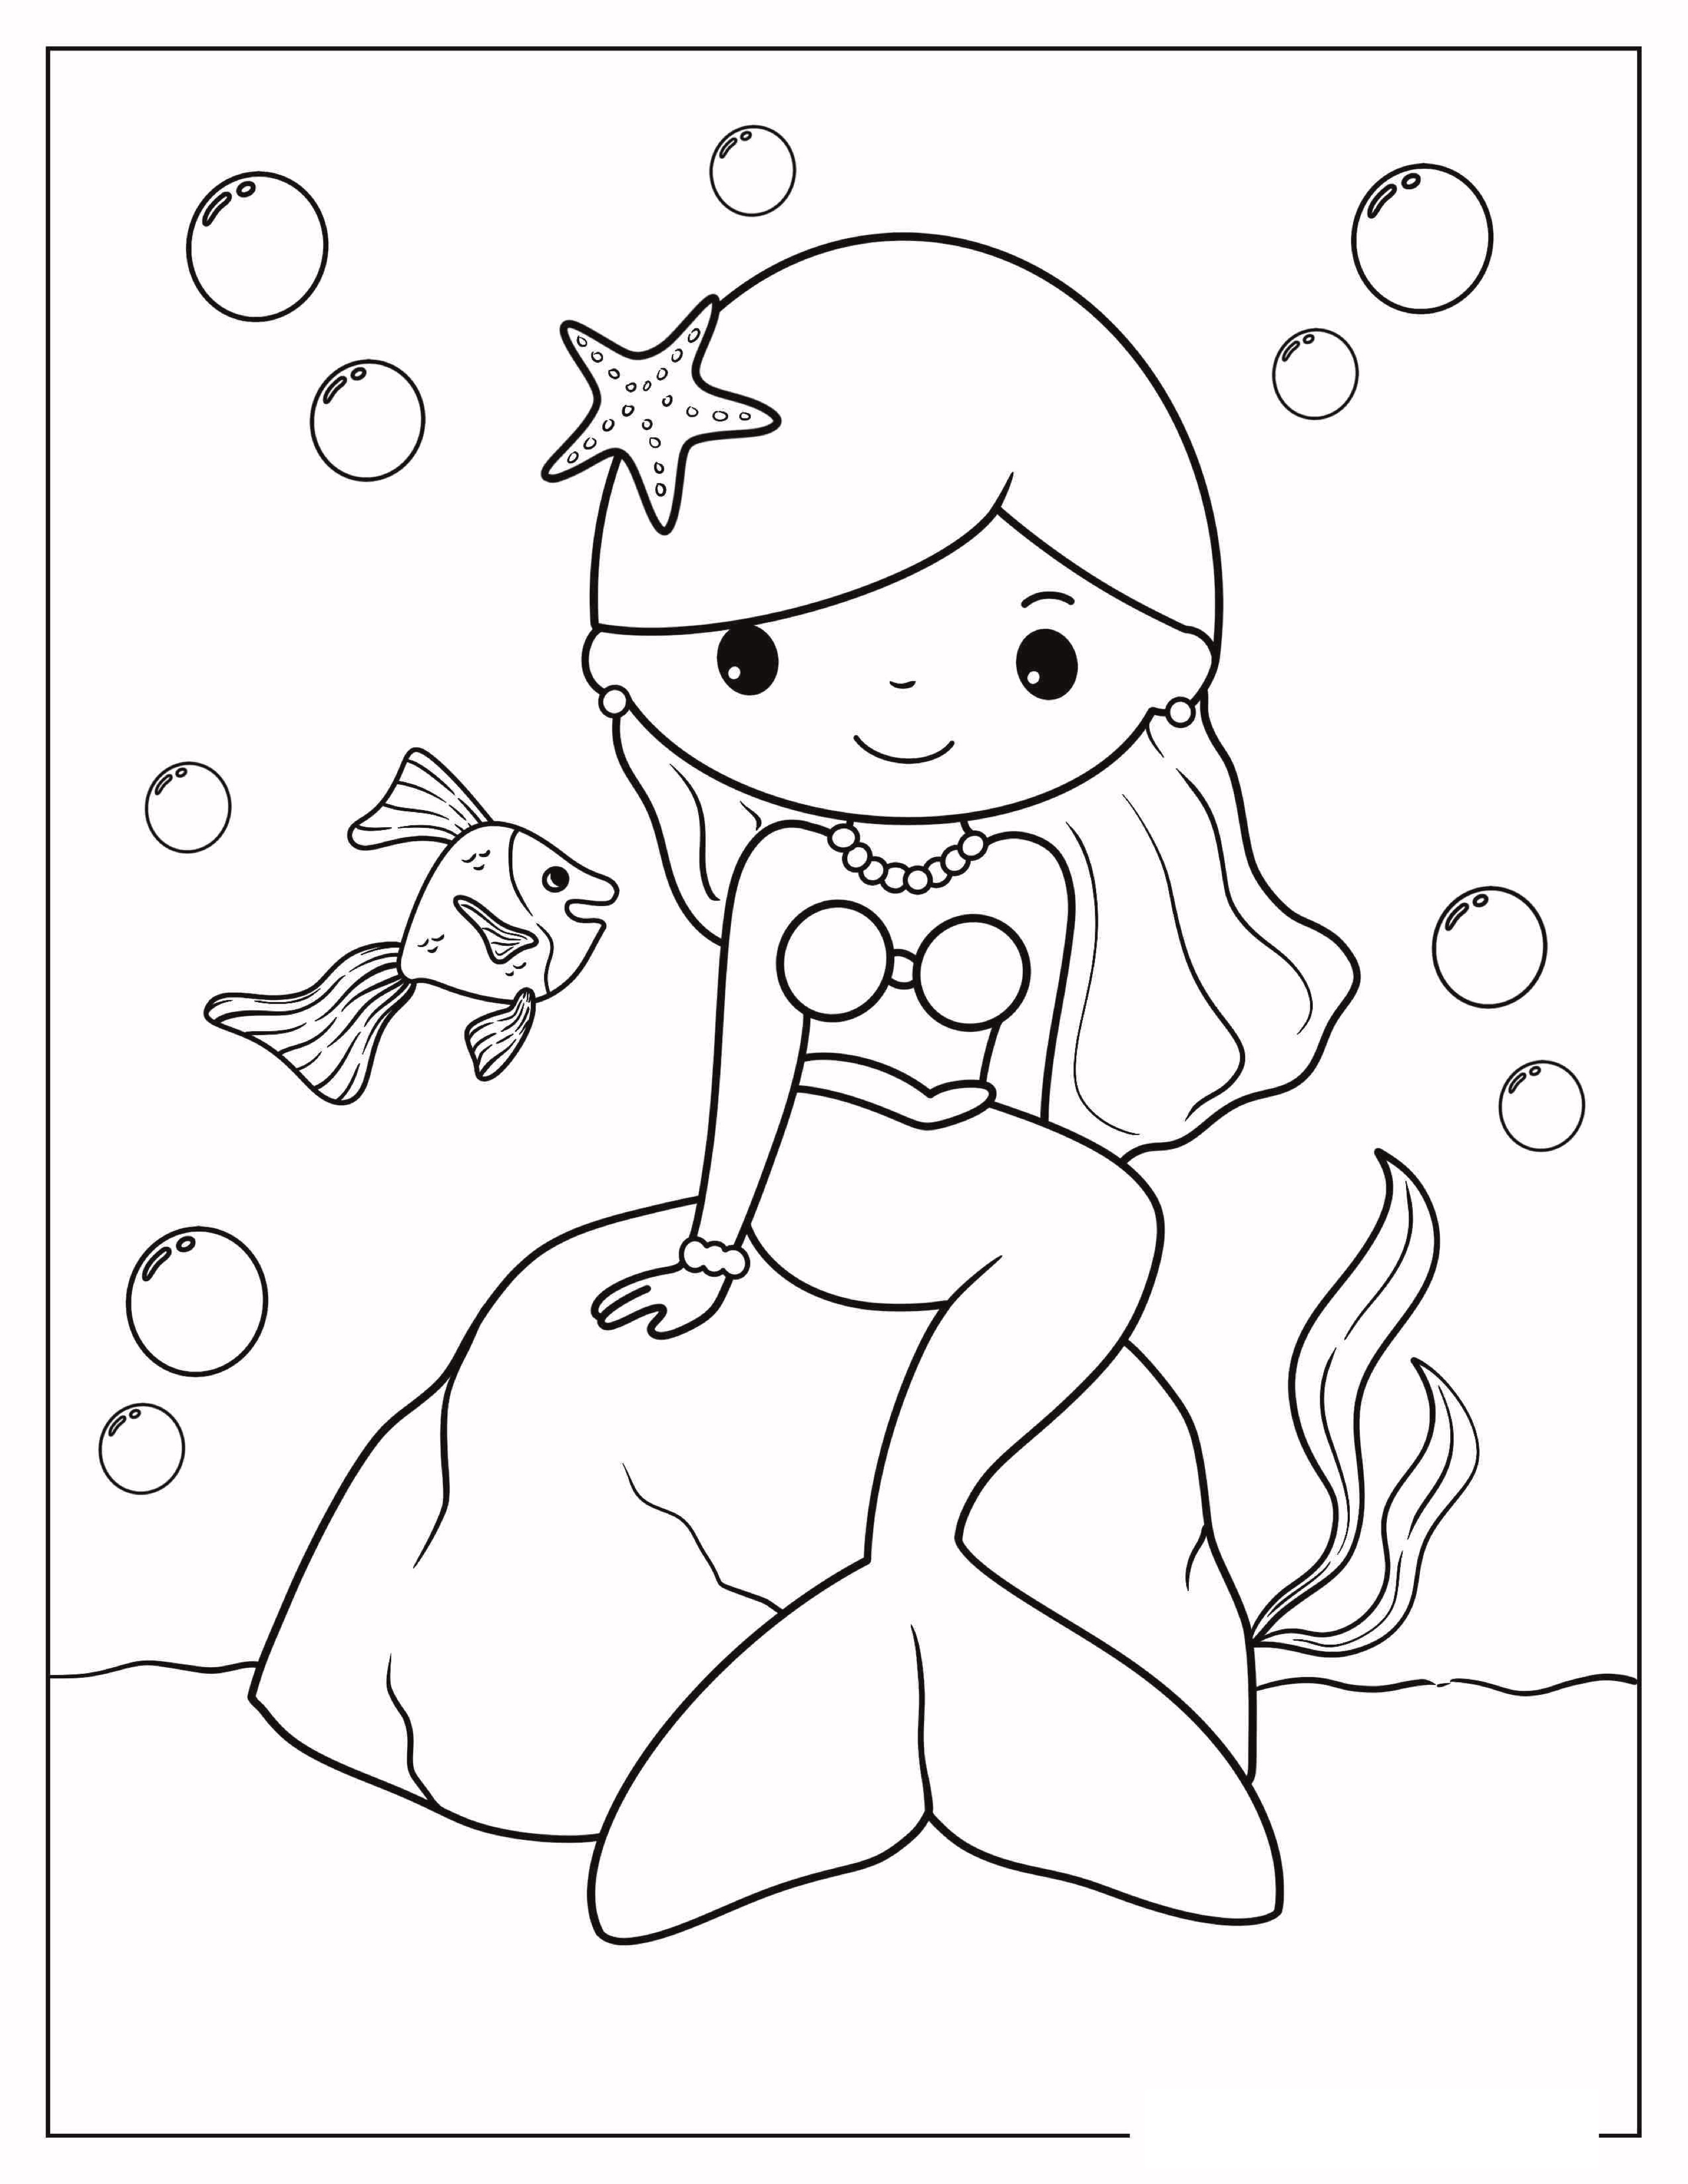 Simple-Mermaid-Outline-Coloring-Sheet-For-Kids.jpg